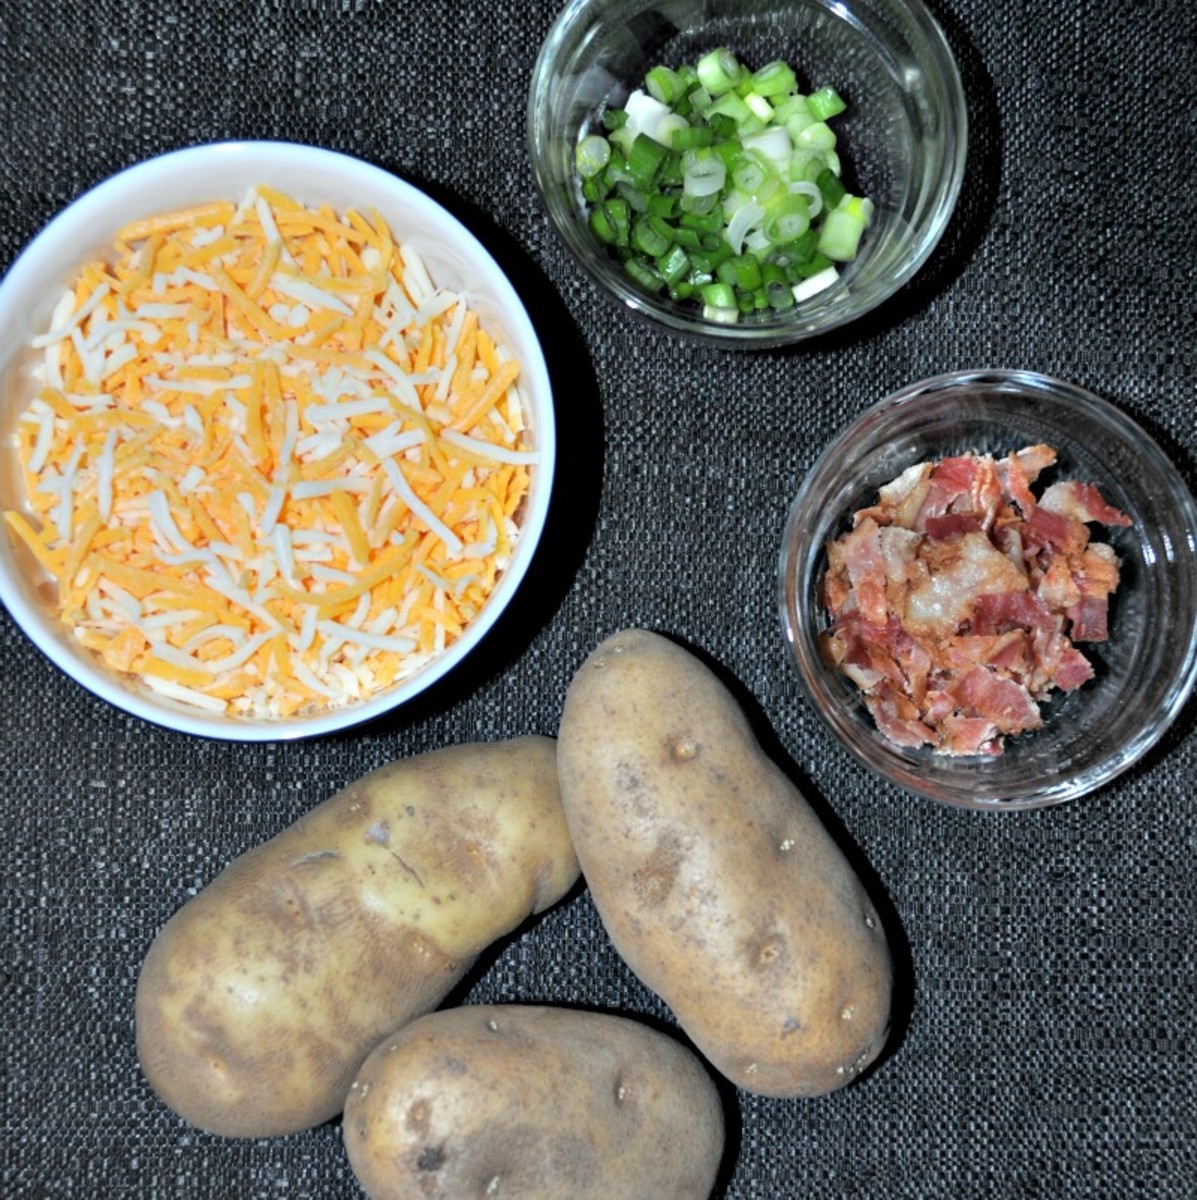 Basic Baked Potato Skin Ingredients